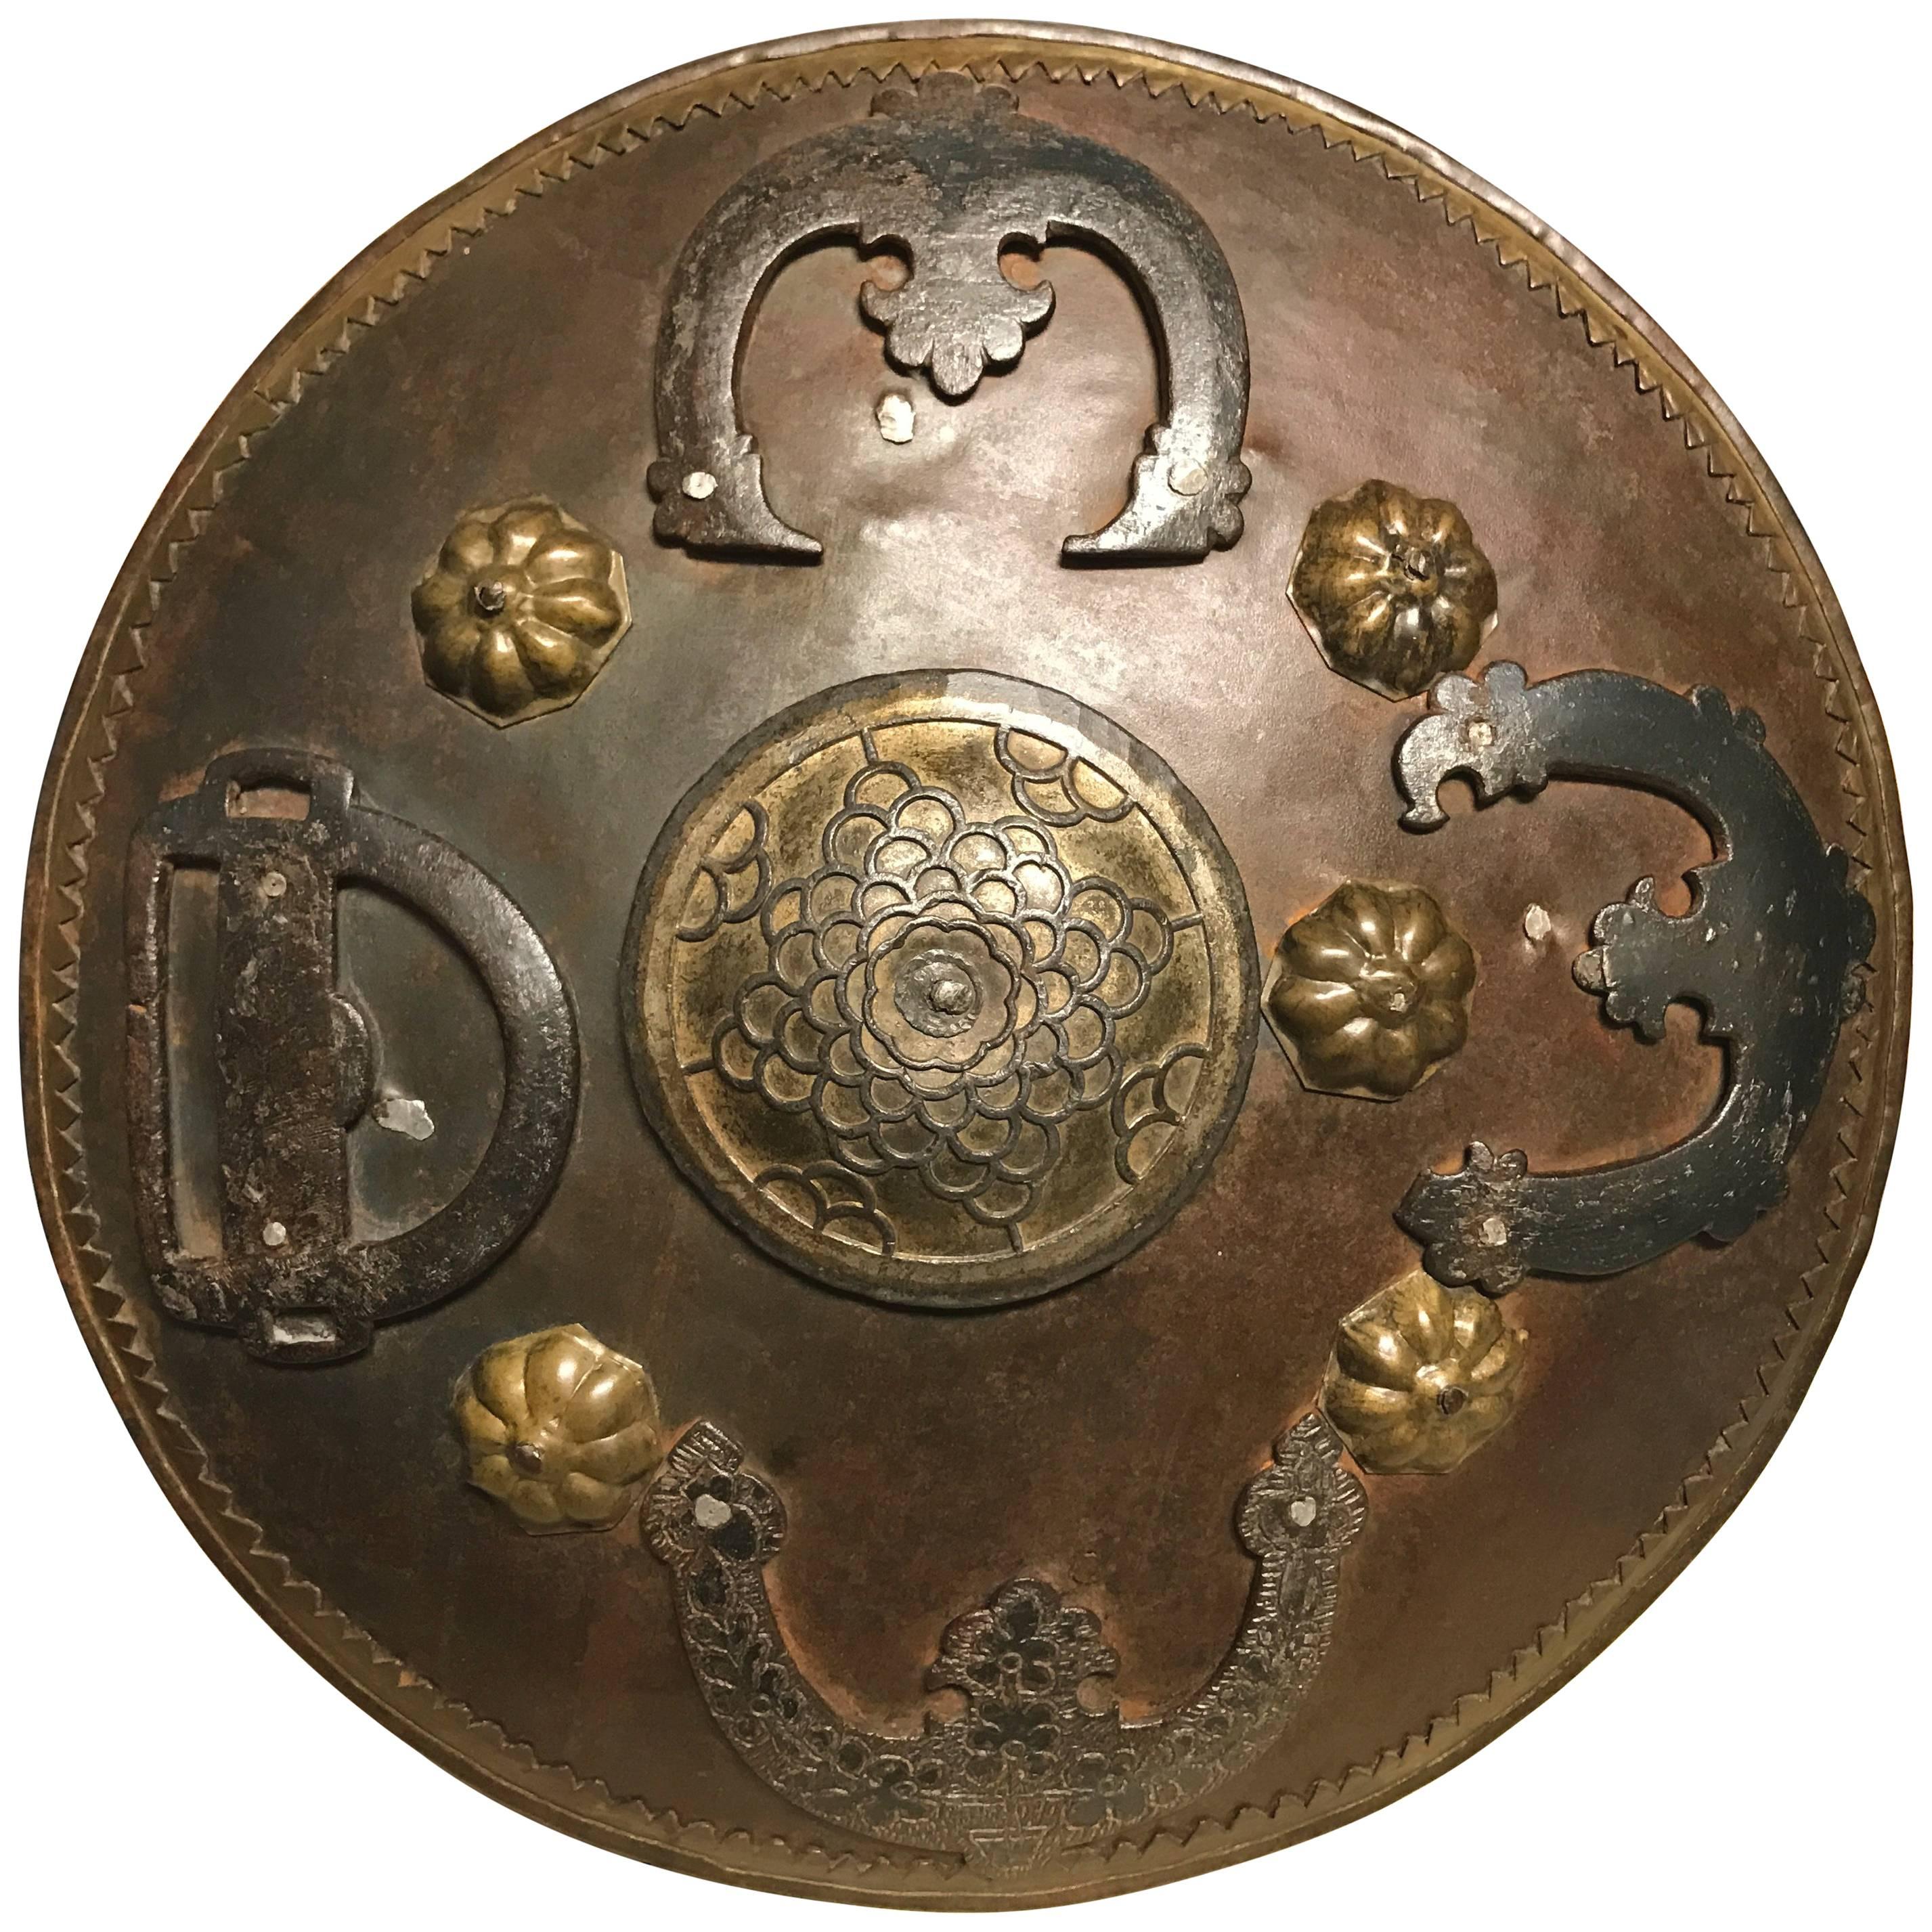 Ottoman Iron and Brass Miniature Shield